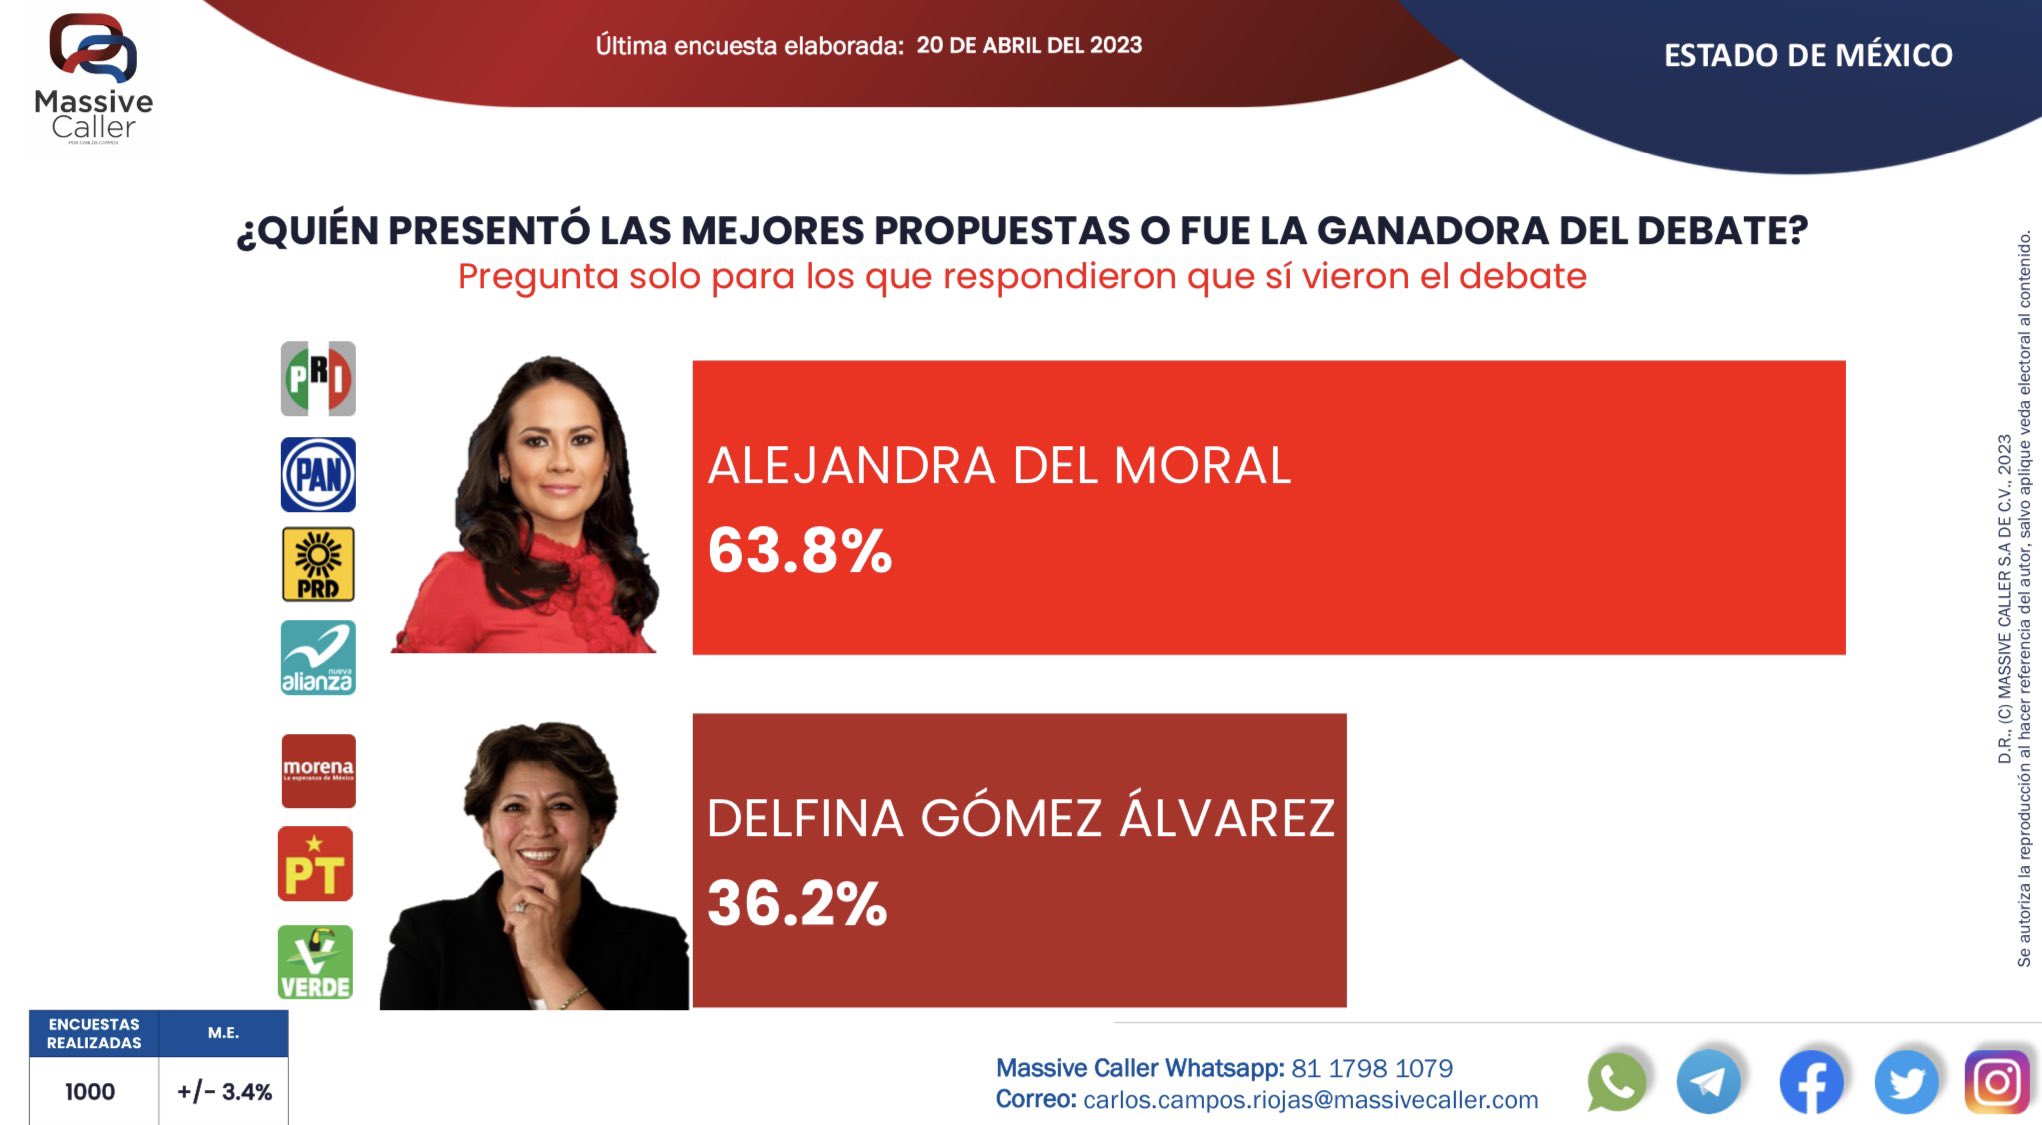 Para Massive Caller, Alejandra del Moral es declarada la ganadora del debate Edomex.